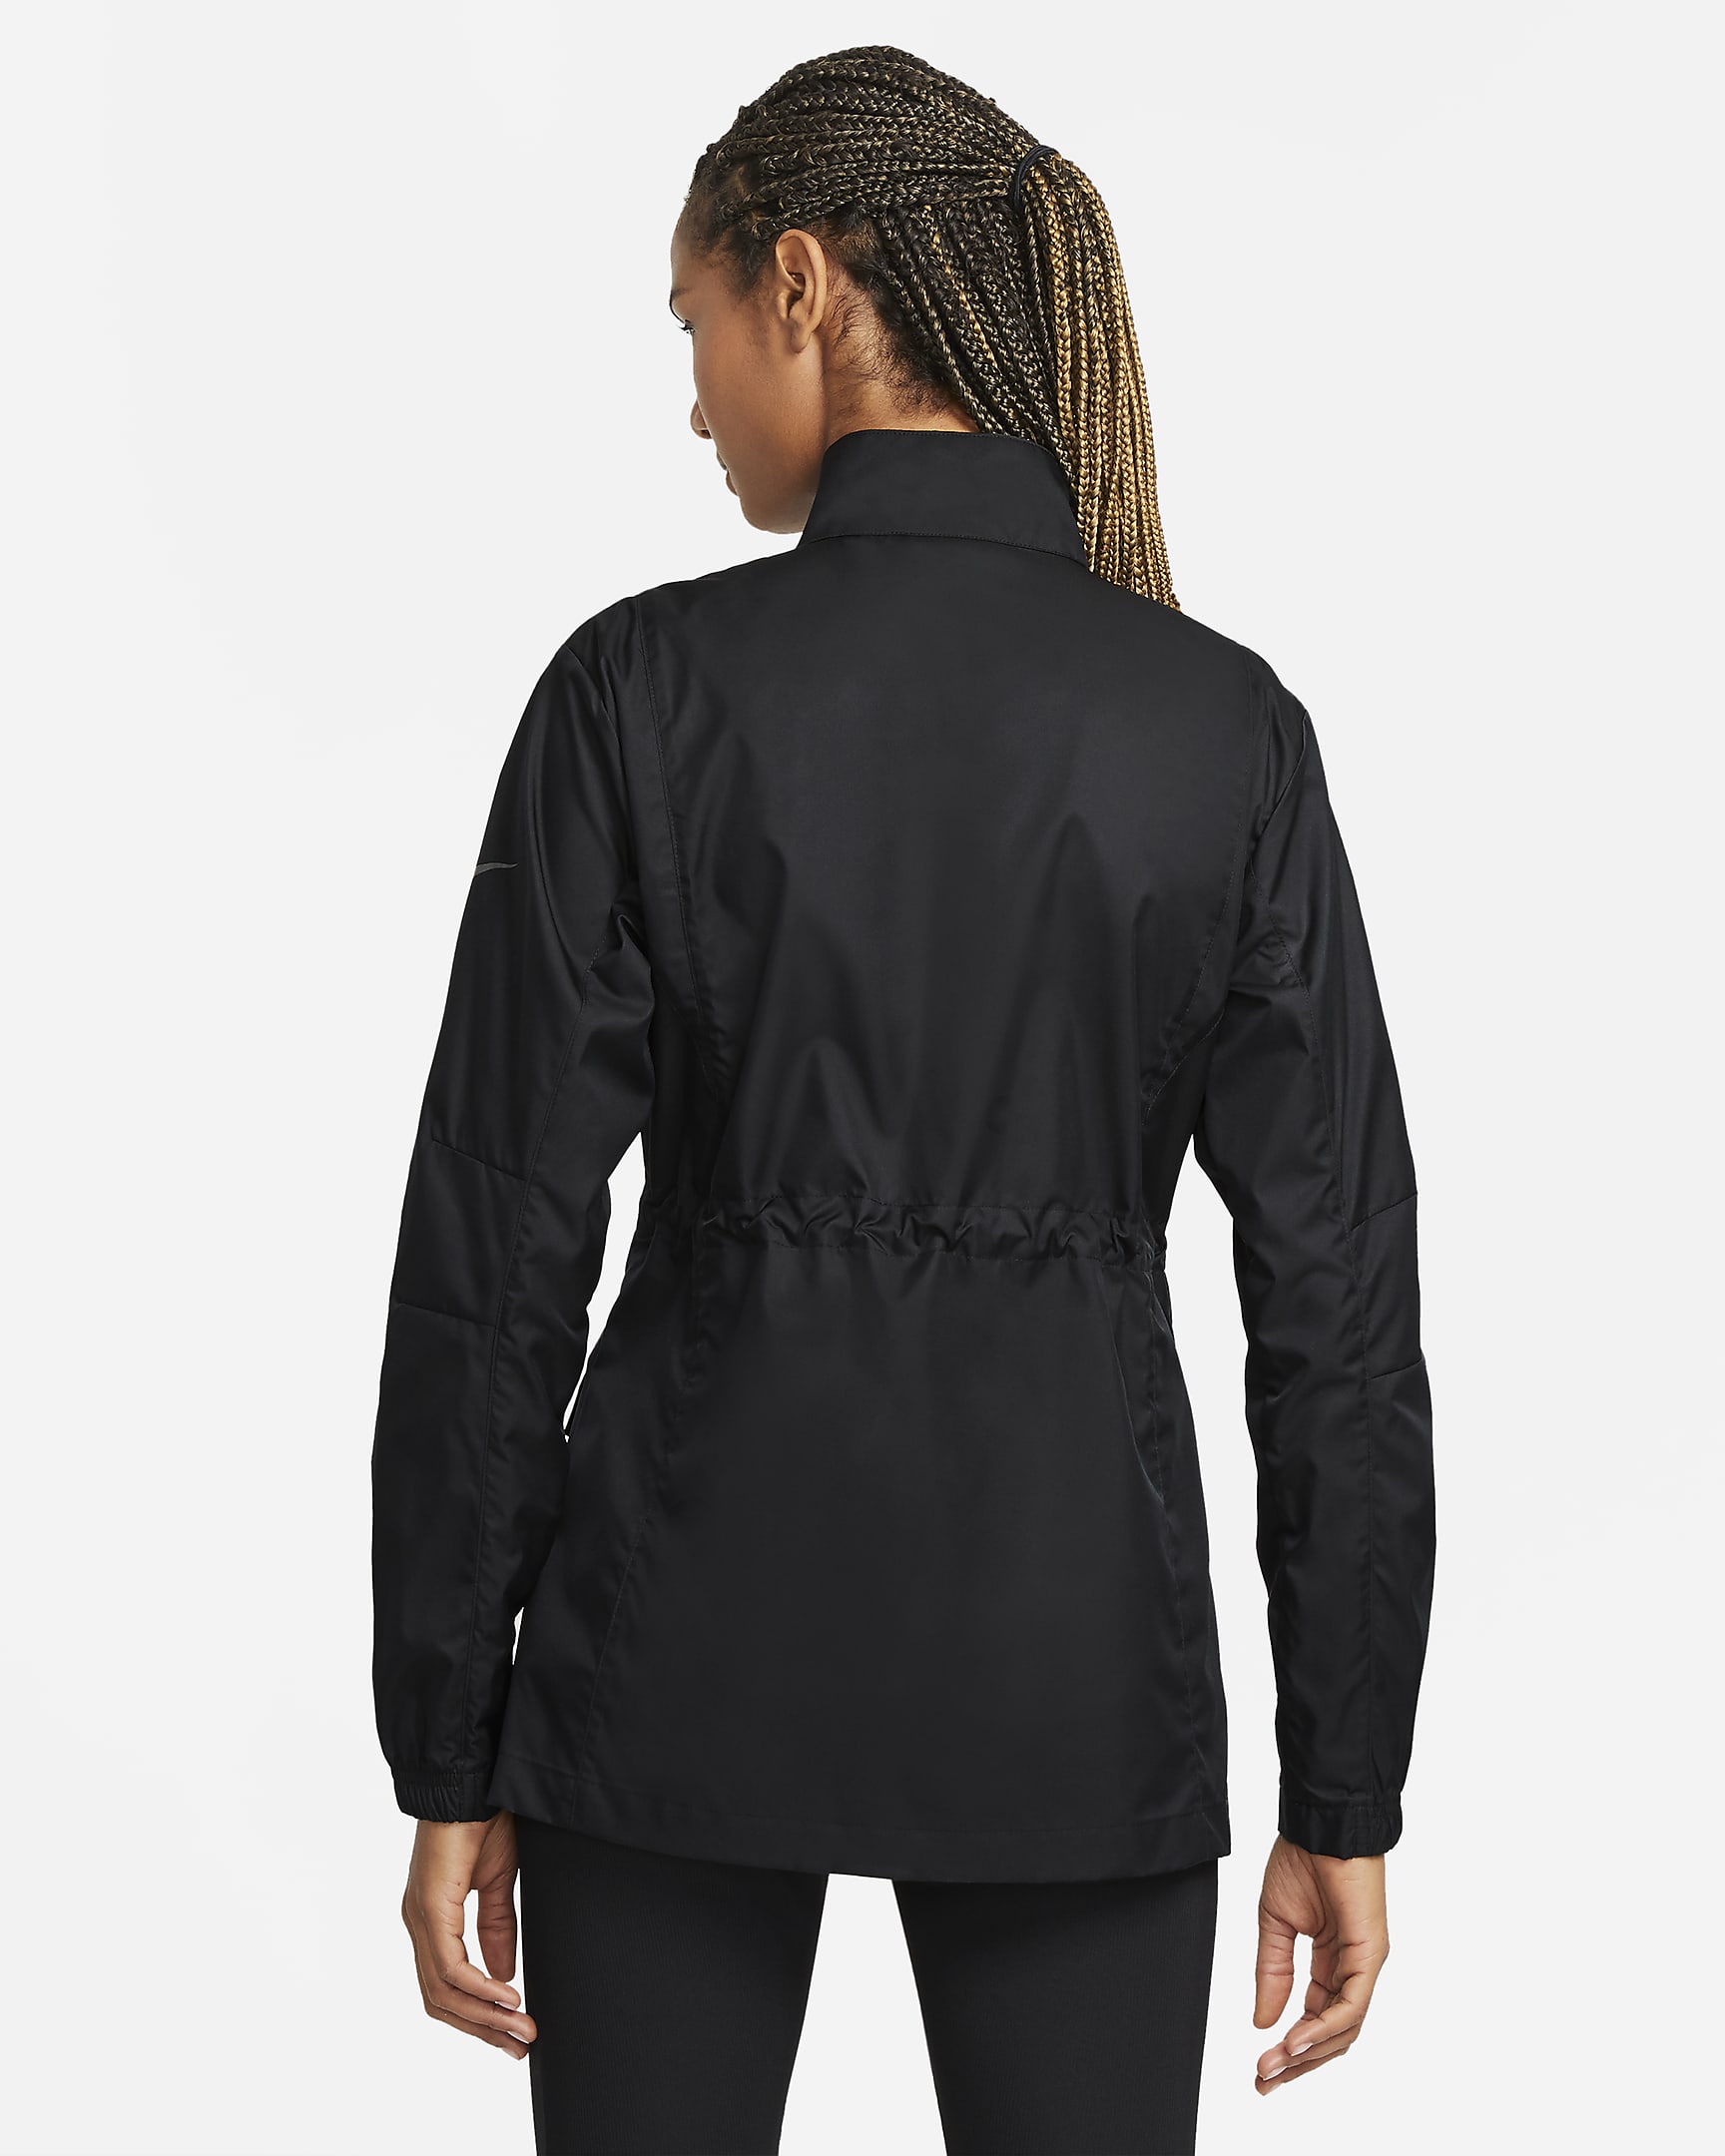 Nike Sportswear Women's M65 Woven Jacket. Nike.com